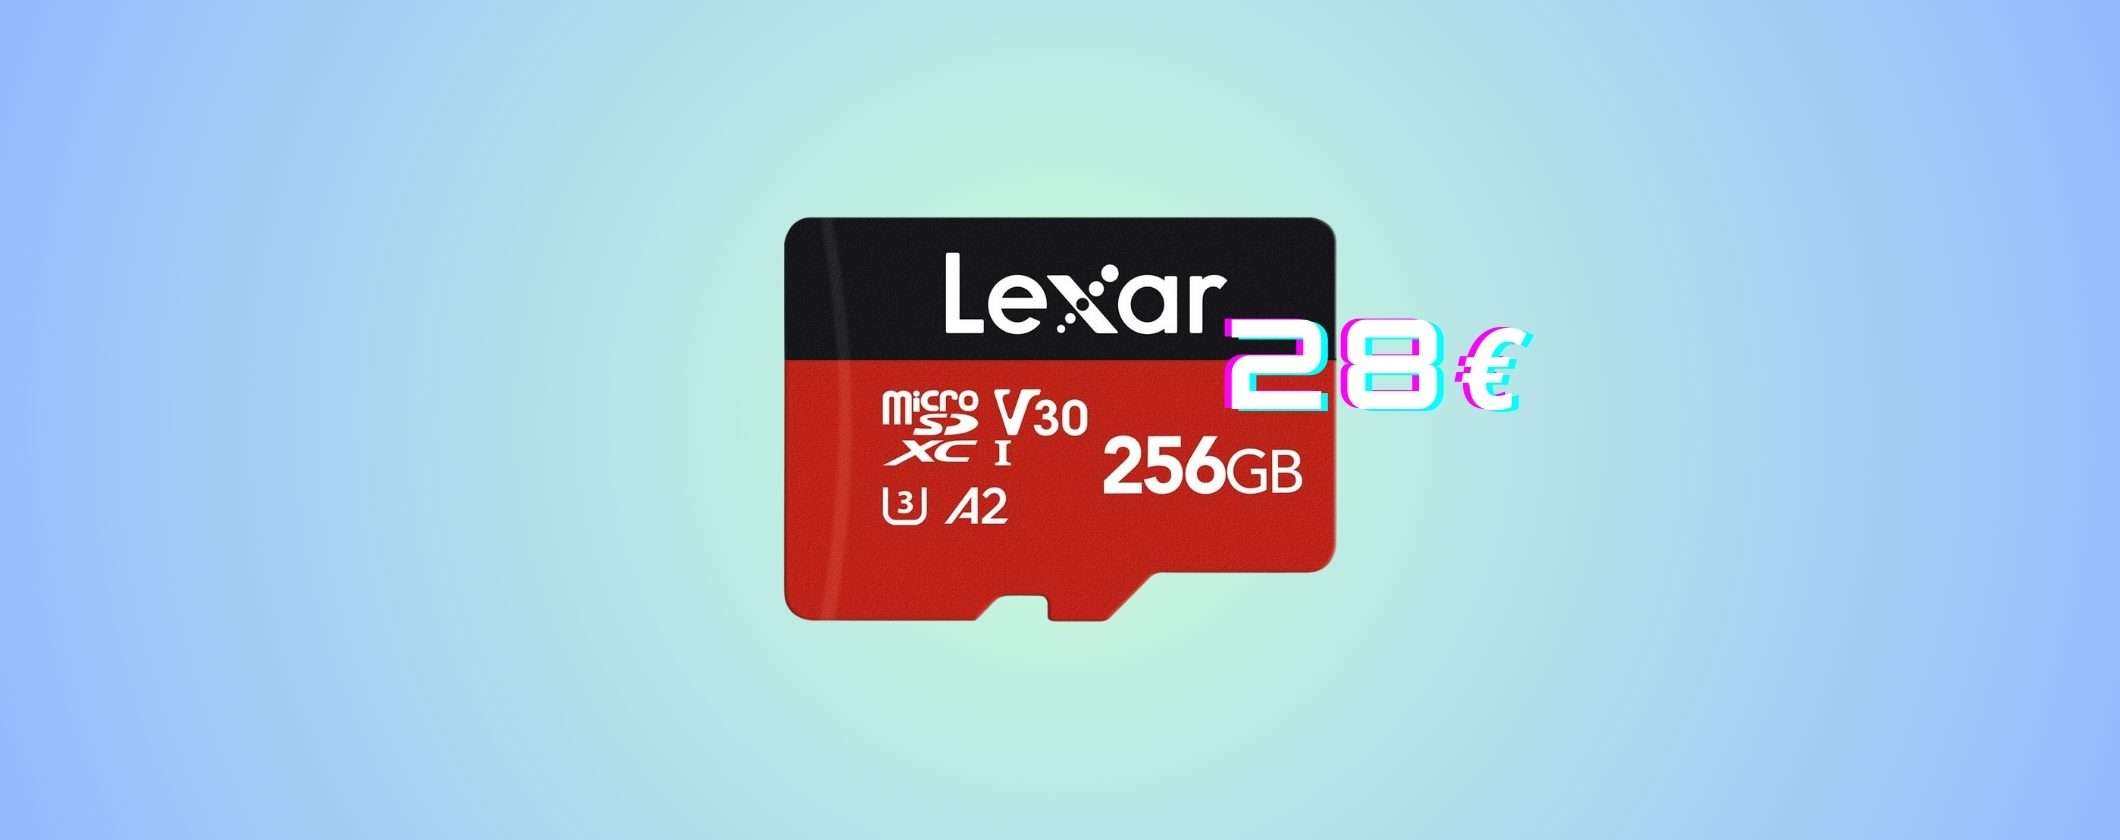 MicroSD Lexar 256GB, MIRACOLO Festa Primavera Amazon: tua a soli 28€